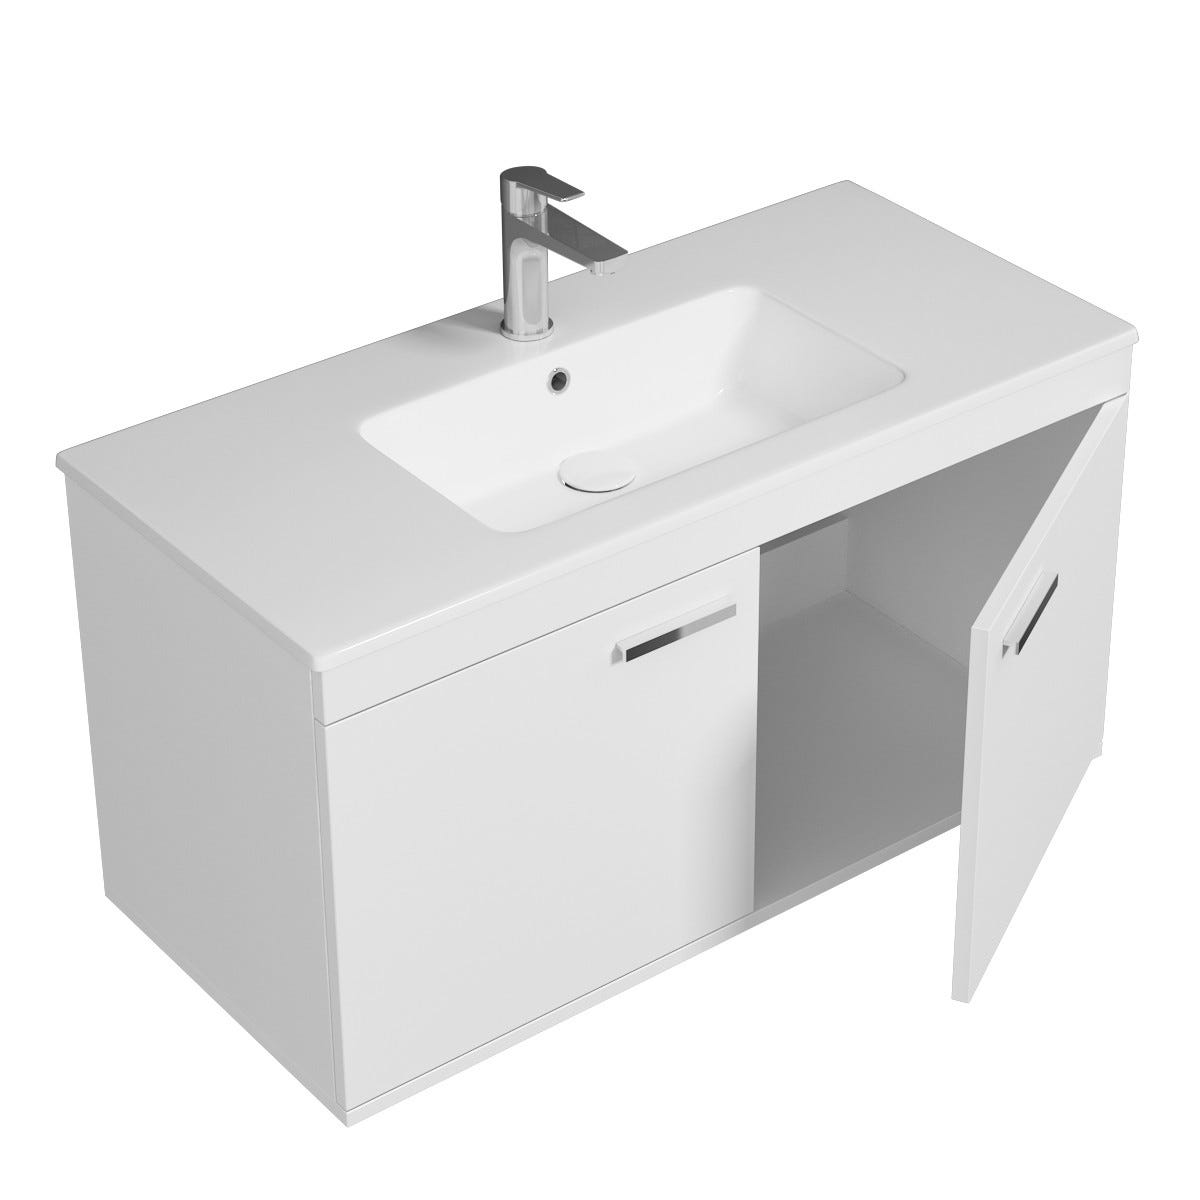 RUBITE Meuble salle de bain simple vasque 2 portes blanc largeur 100 cm 1